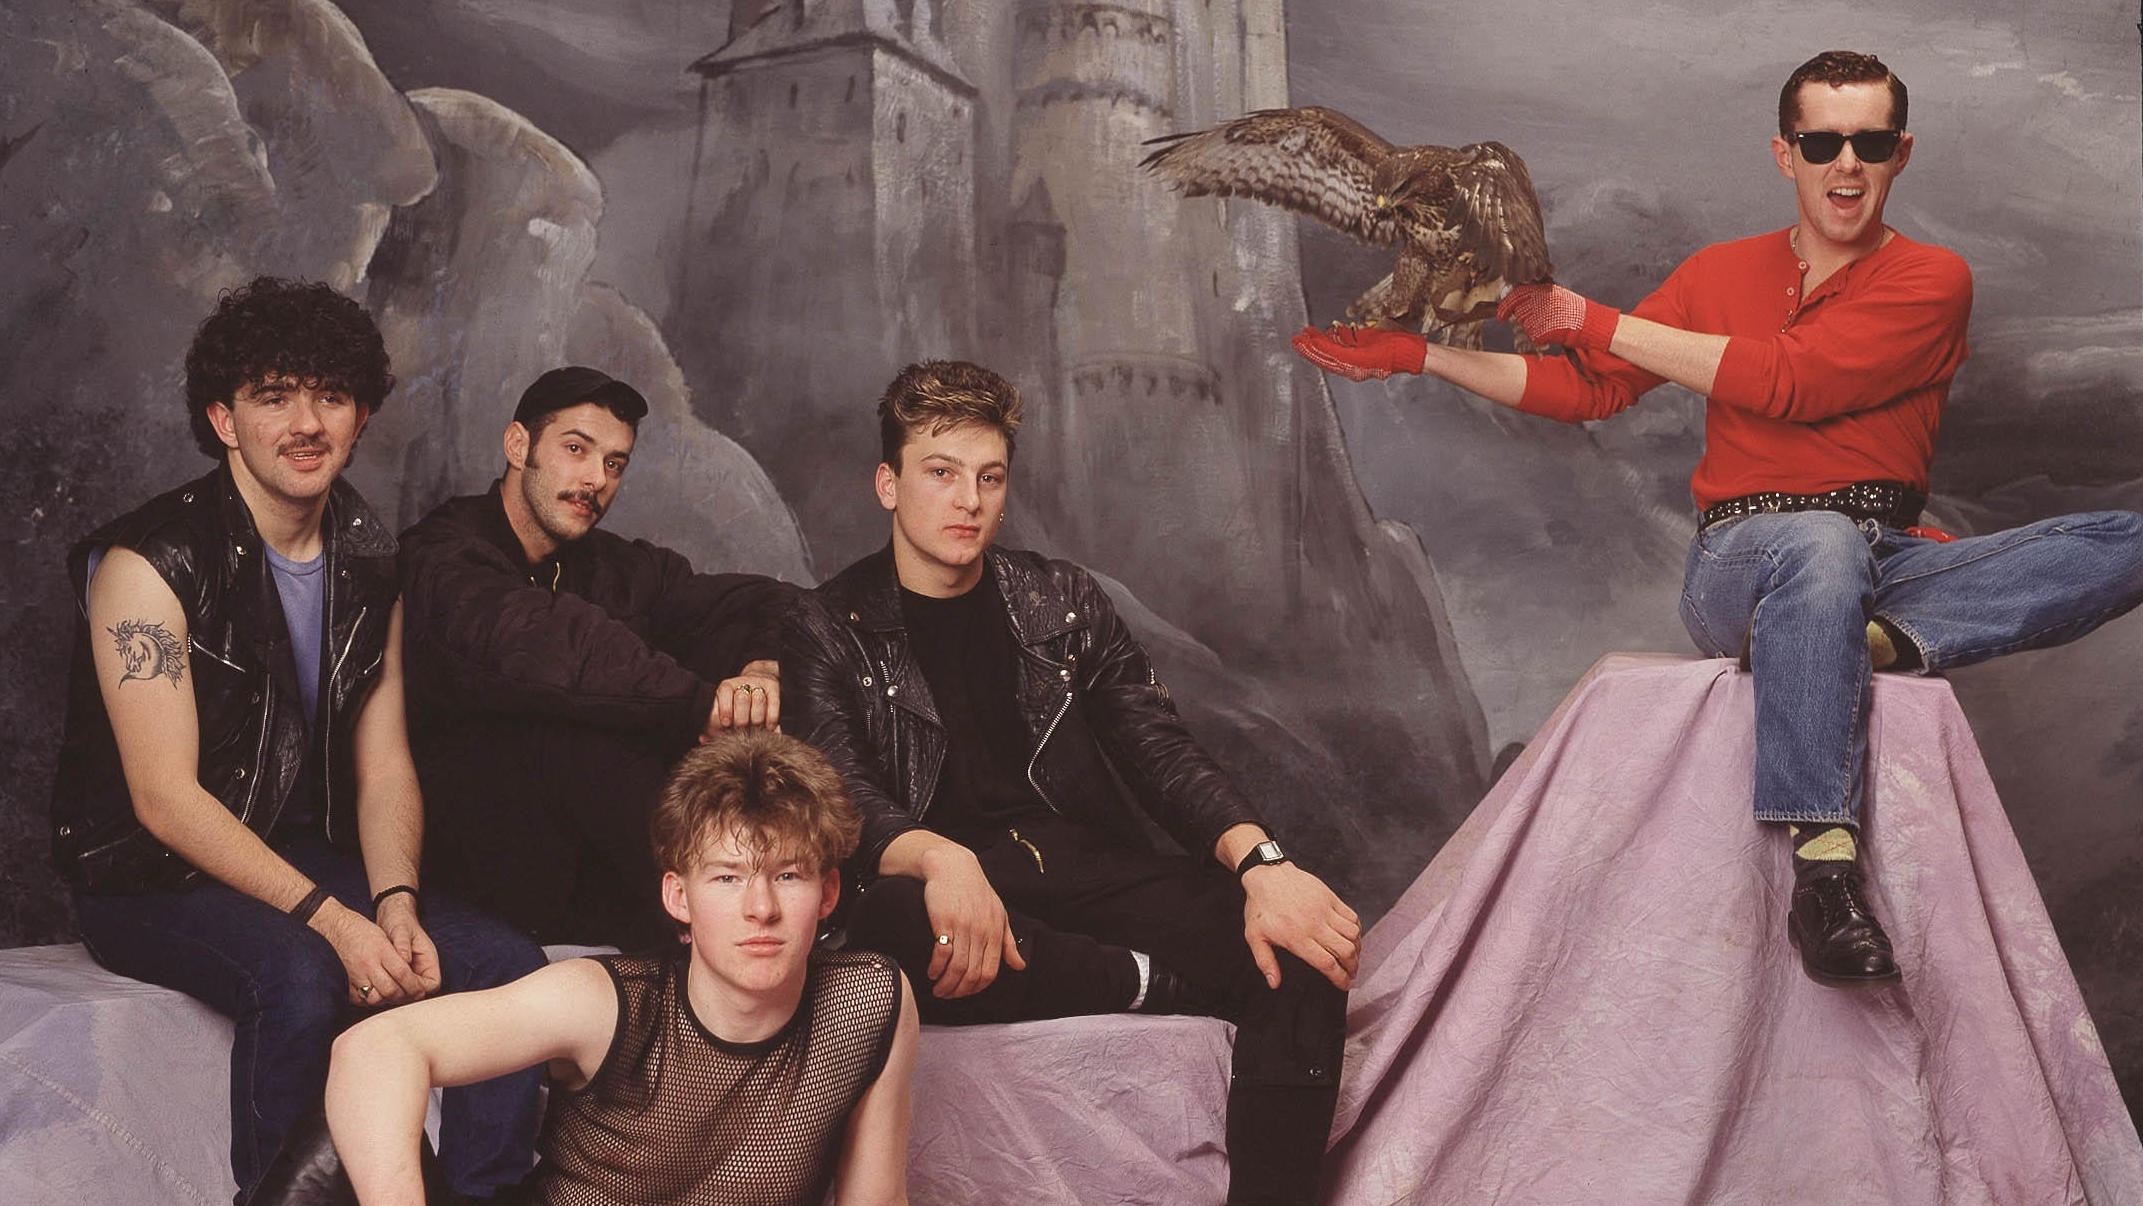 Portrait der Band Franky goes to Hollywood aus dem Jahr 1984. Eines der Bandmitglieder trägt einen Raubvogel auf dem Arm, währenddessen die anderen Bandmitglieder in verrückten Outfits die Kamera schauen